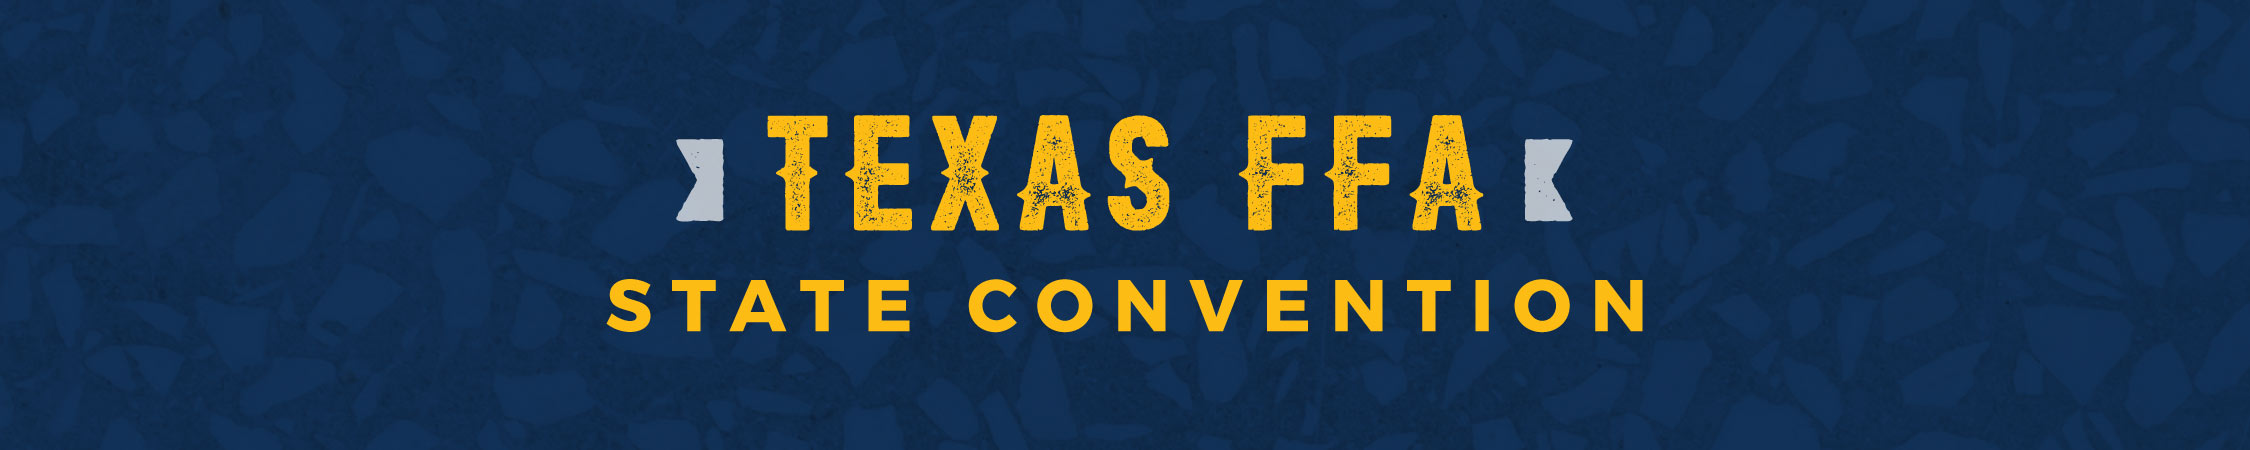 texas ffa convention header